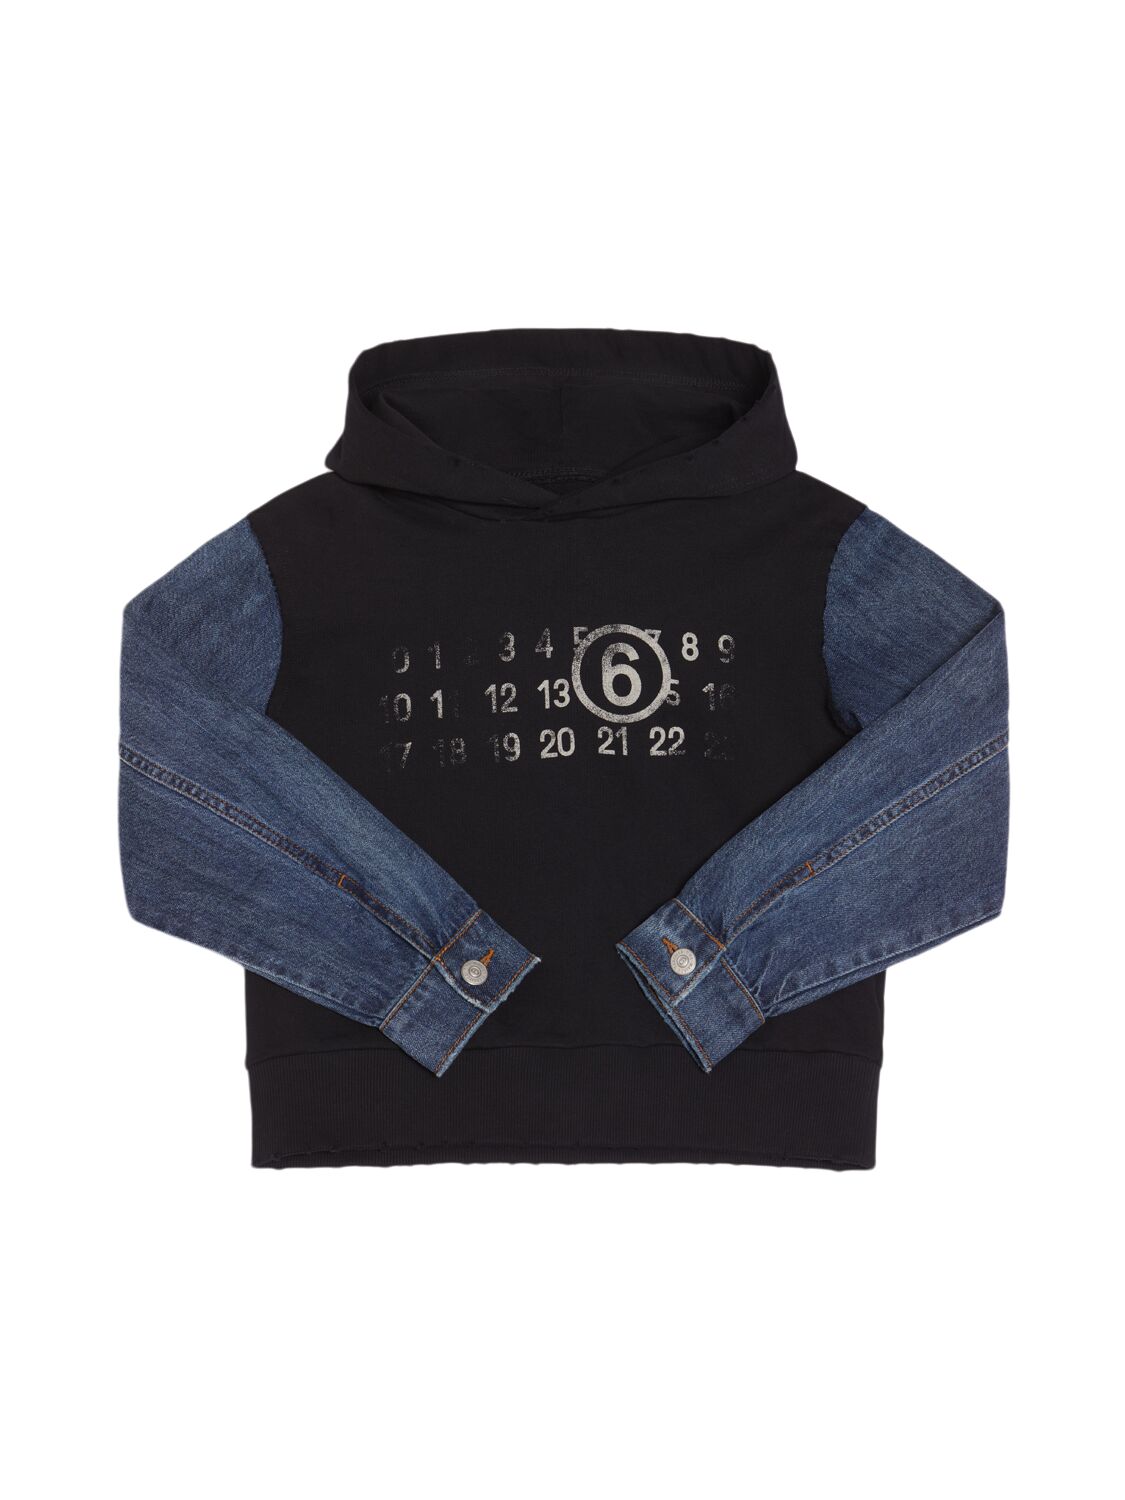 Mm6 Maison Margiela Cotton Jersey & Denim Sweatshirt Hoodie In Black